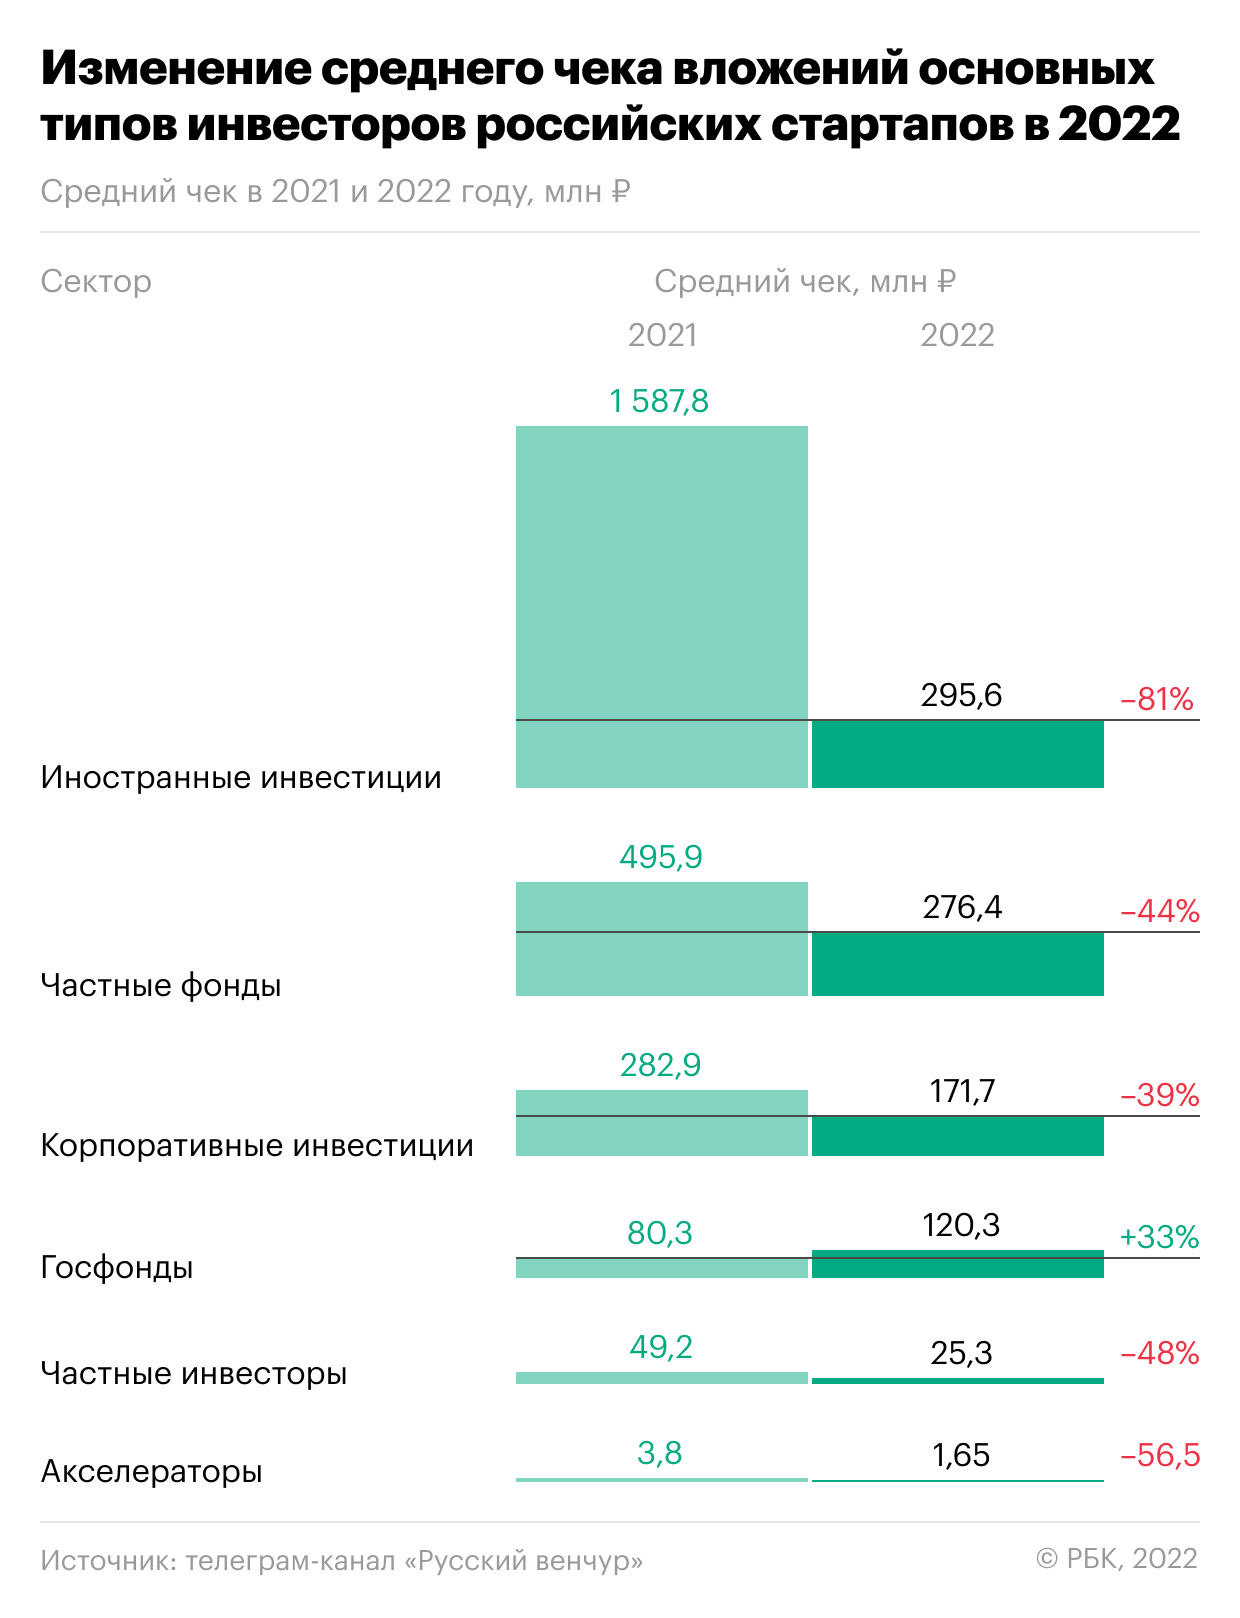 Крупные сделки и снижение объемов инвестиций: тренды российского венчура